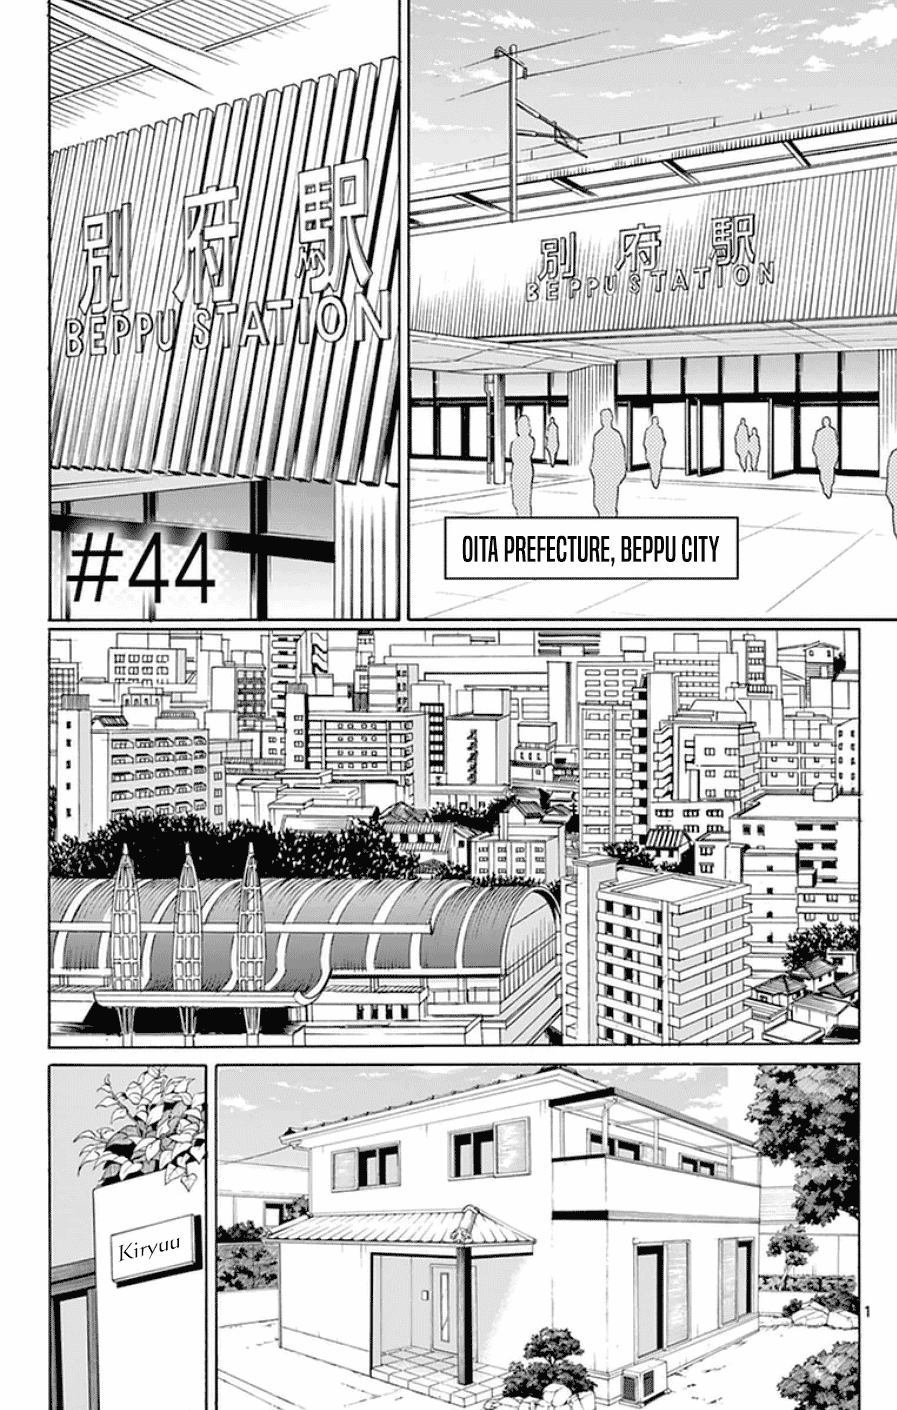 Dousei Sensei Wa Renai Ga Wakaranai. - Page 1